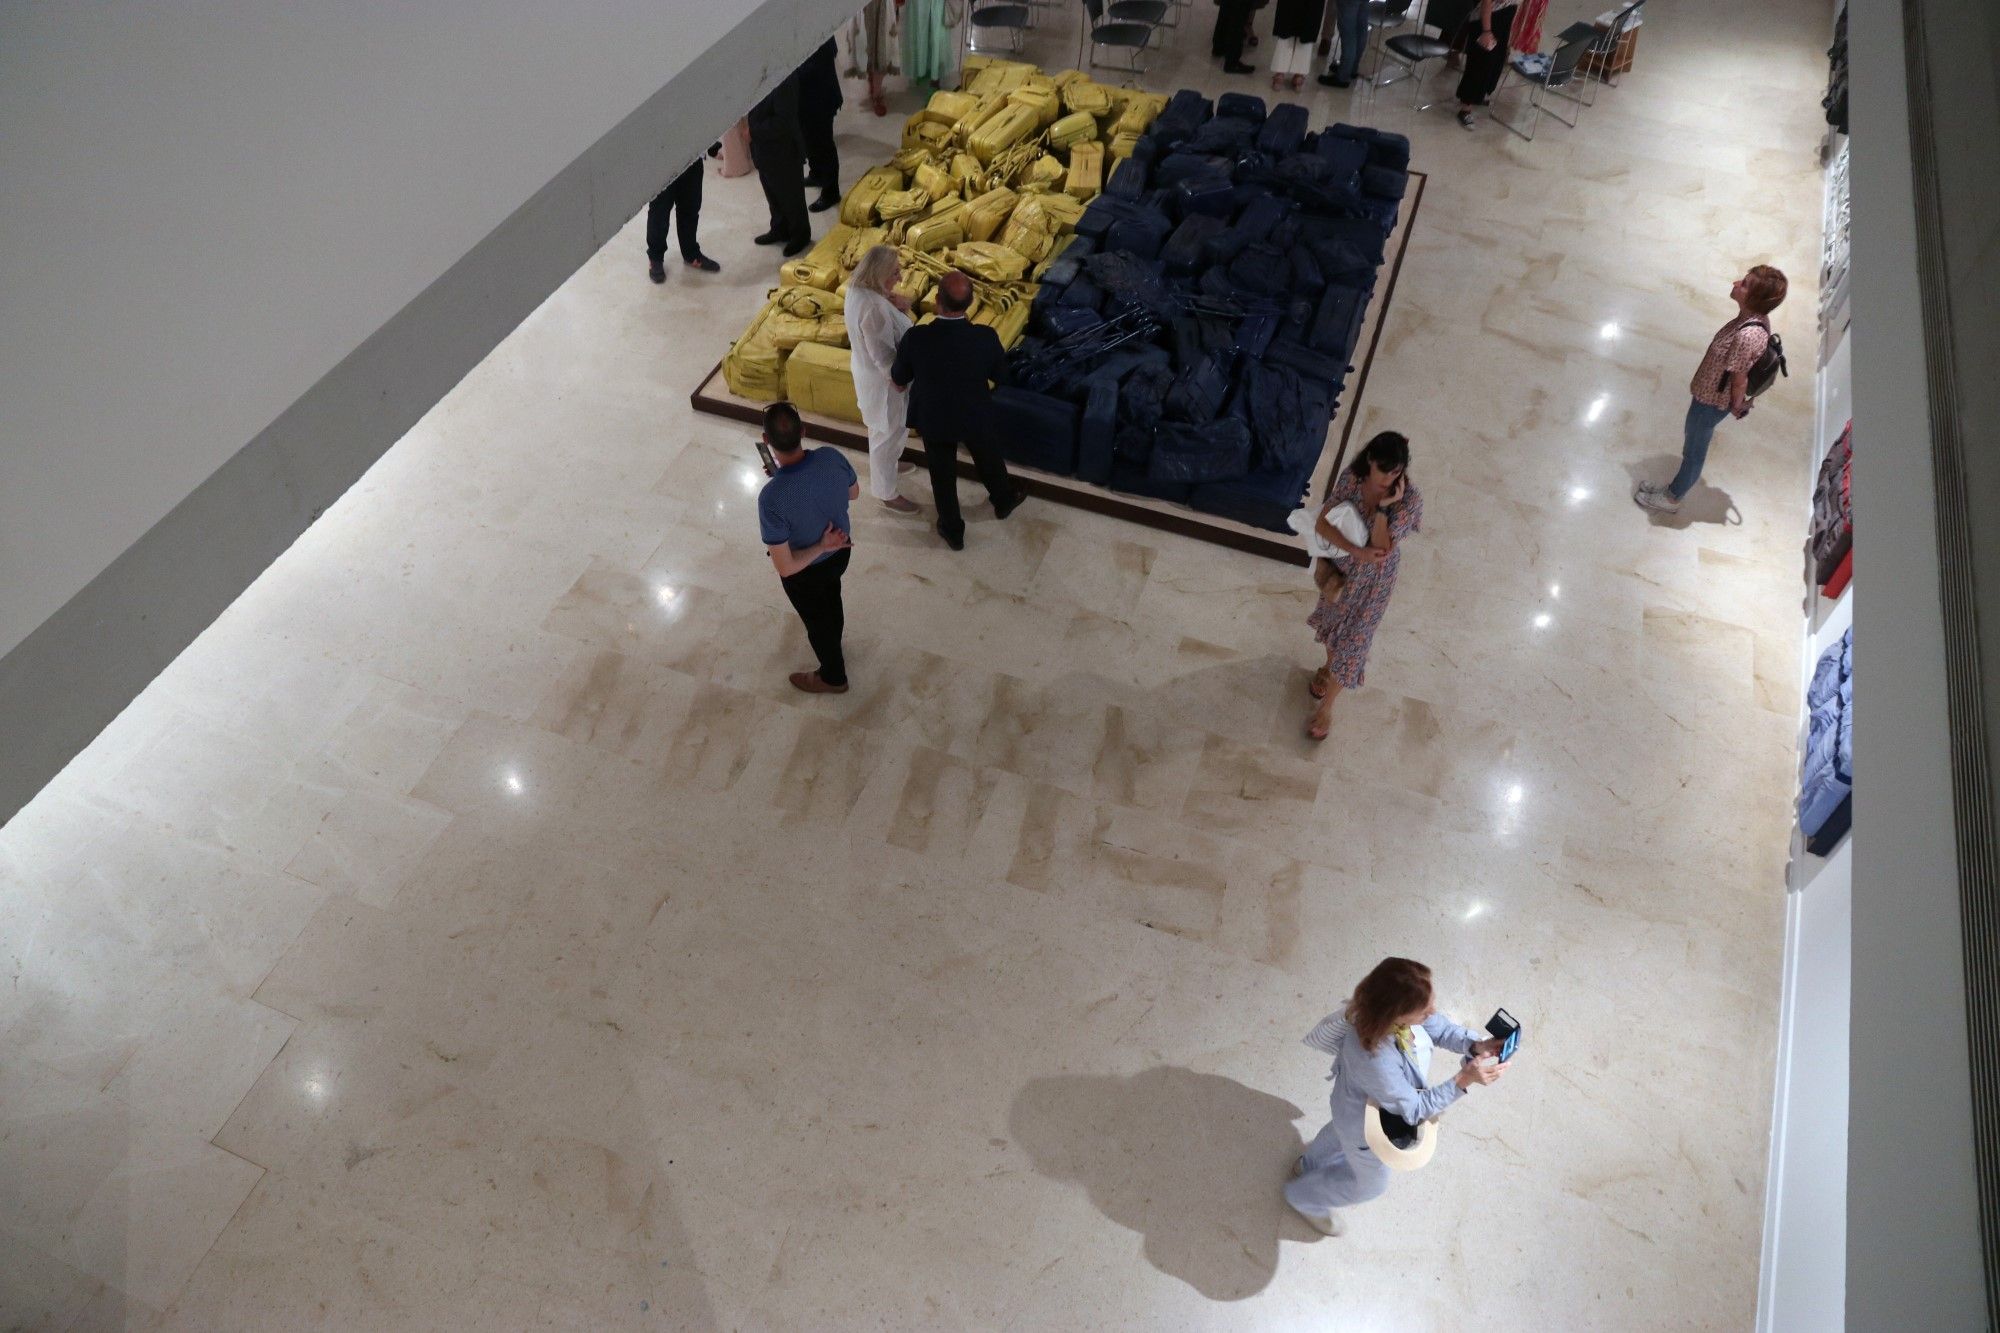 El Centro de Arte Contemporáneo acoge la primera exposición individual de Cristóbal Toral